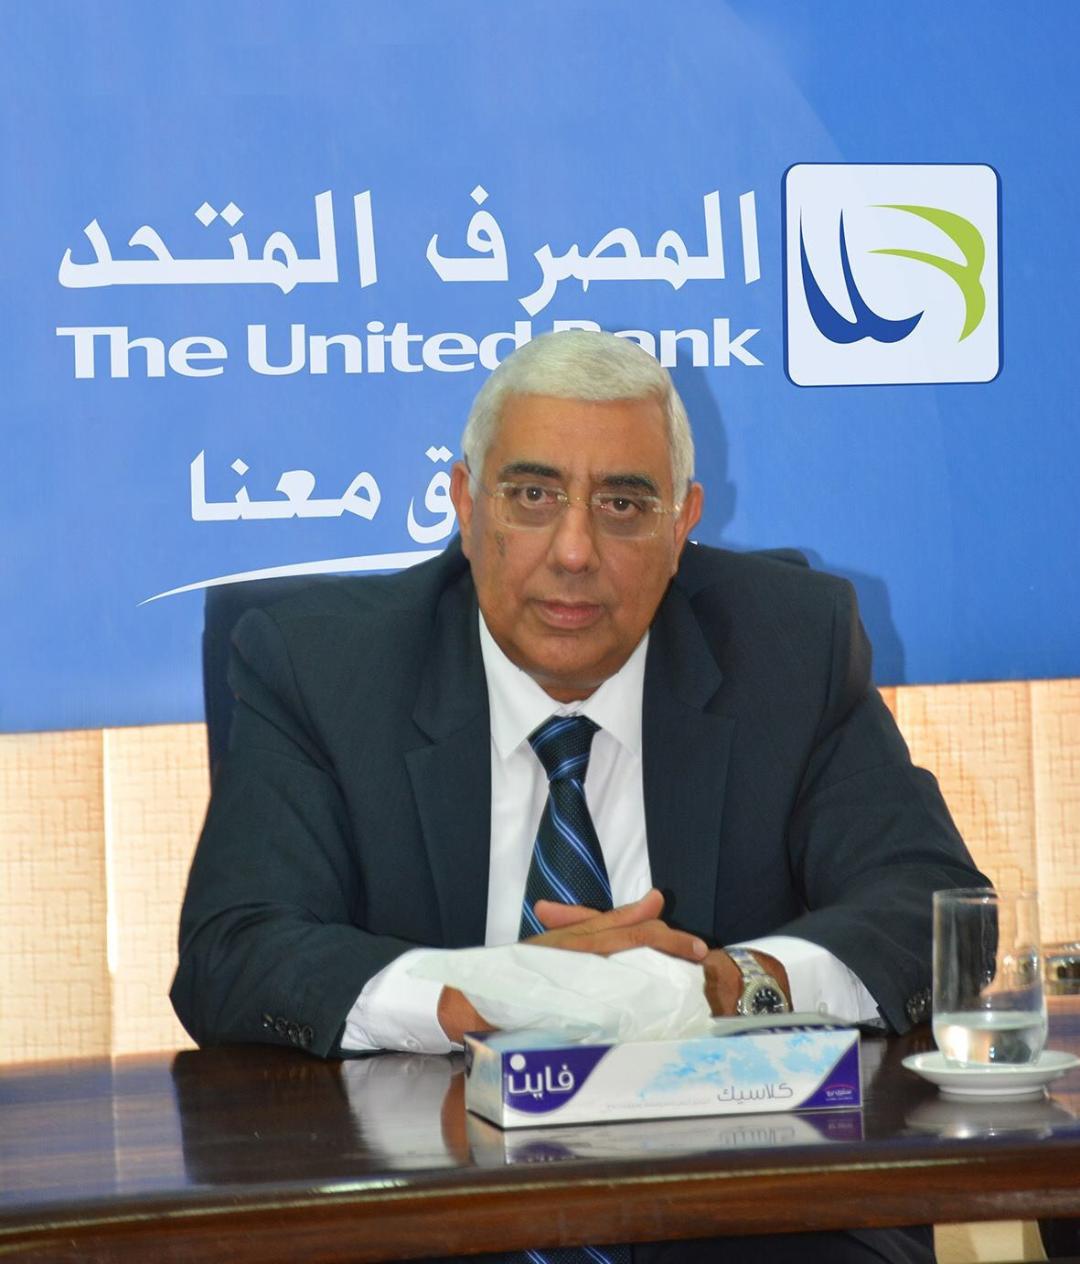   المصرف المتحد والبنك الافريقي للتصدير والاستيراد يقدمان حزمة تمويلية وتأمينية وخدمات بنكية رقمية للمصدرين المصريين